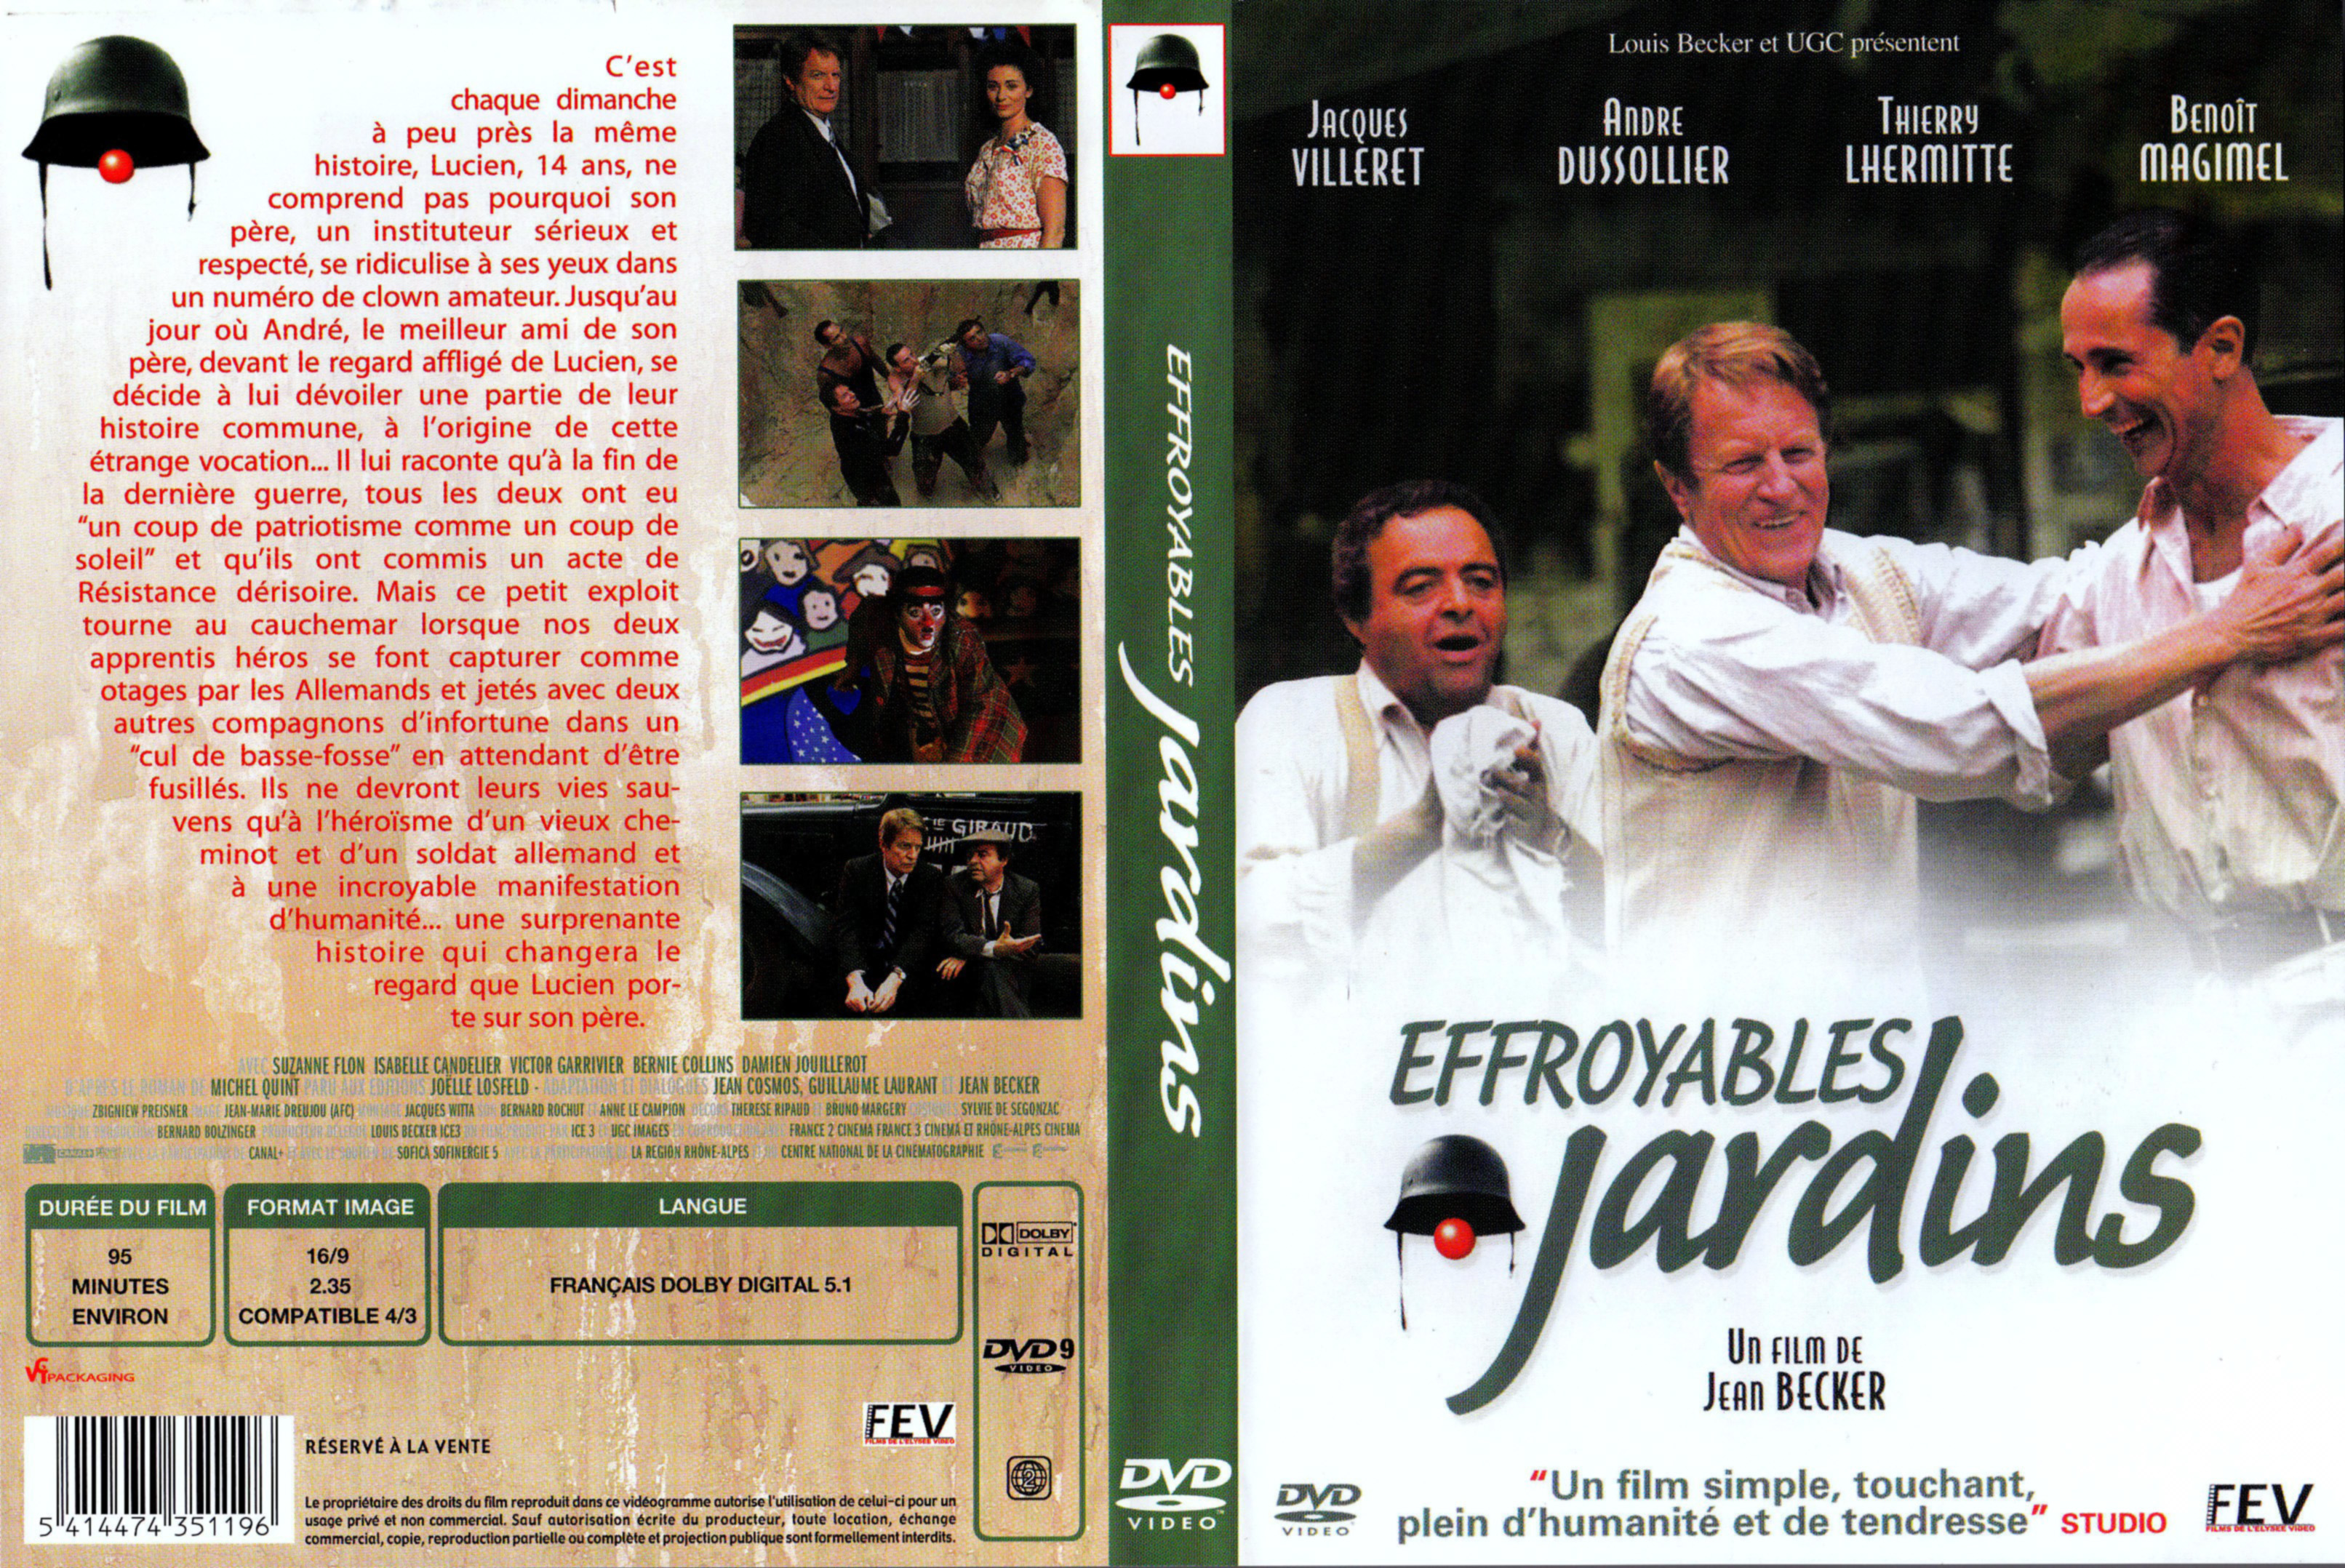 Jaquette DVD Effroyables jardins v2